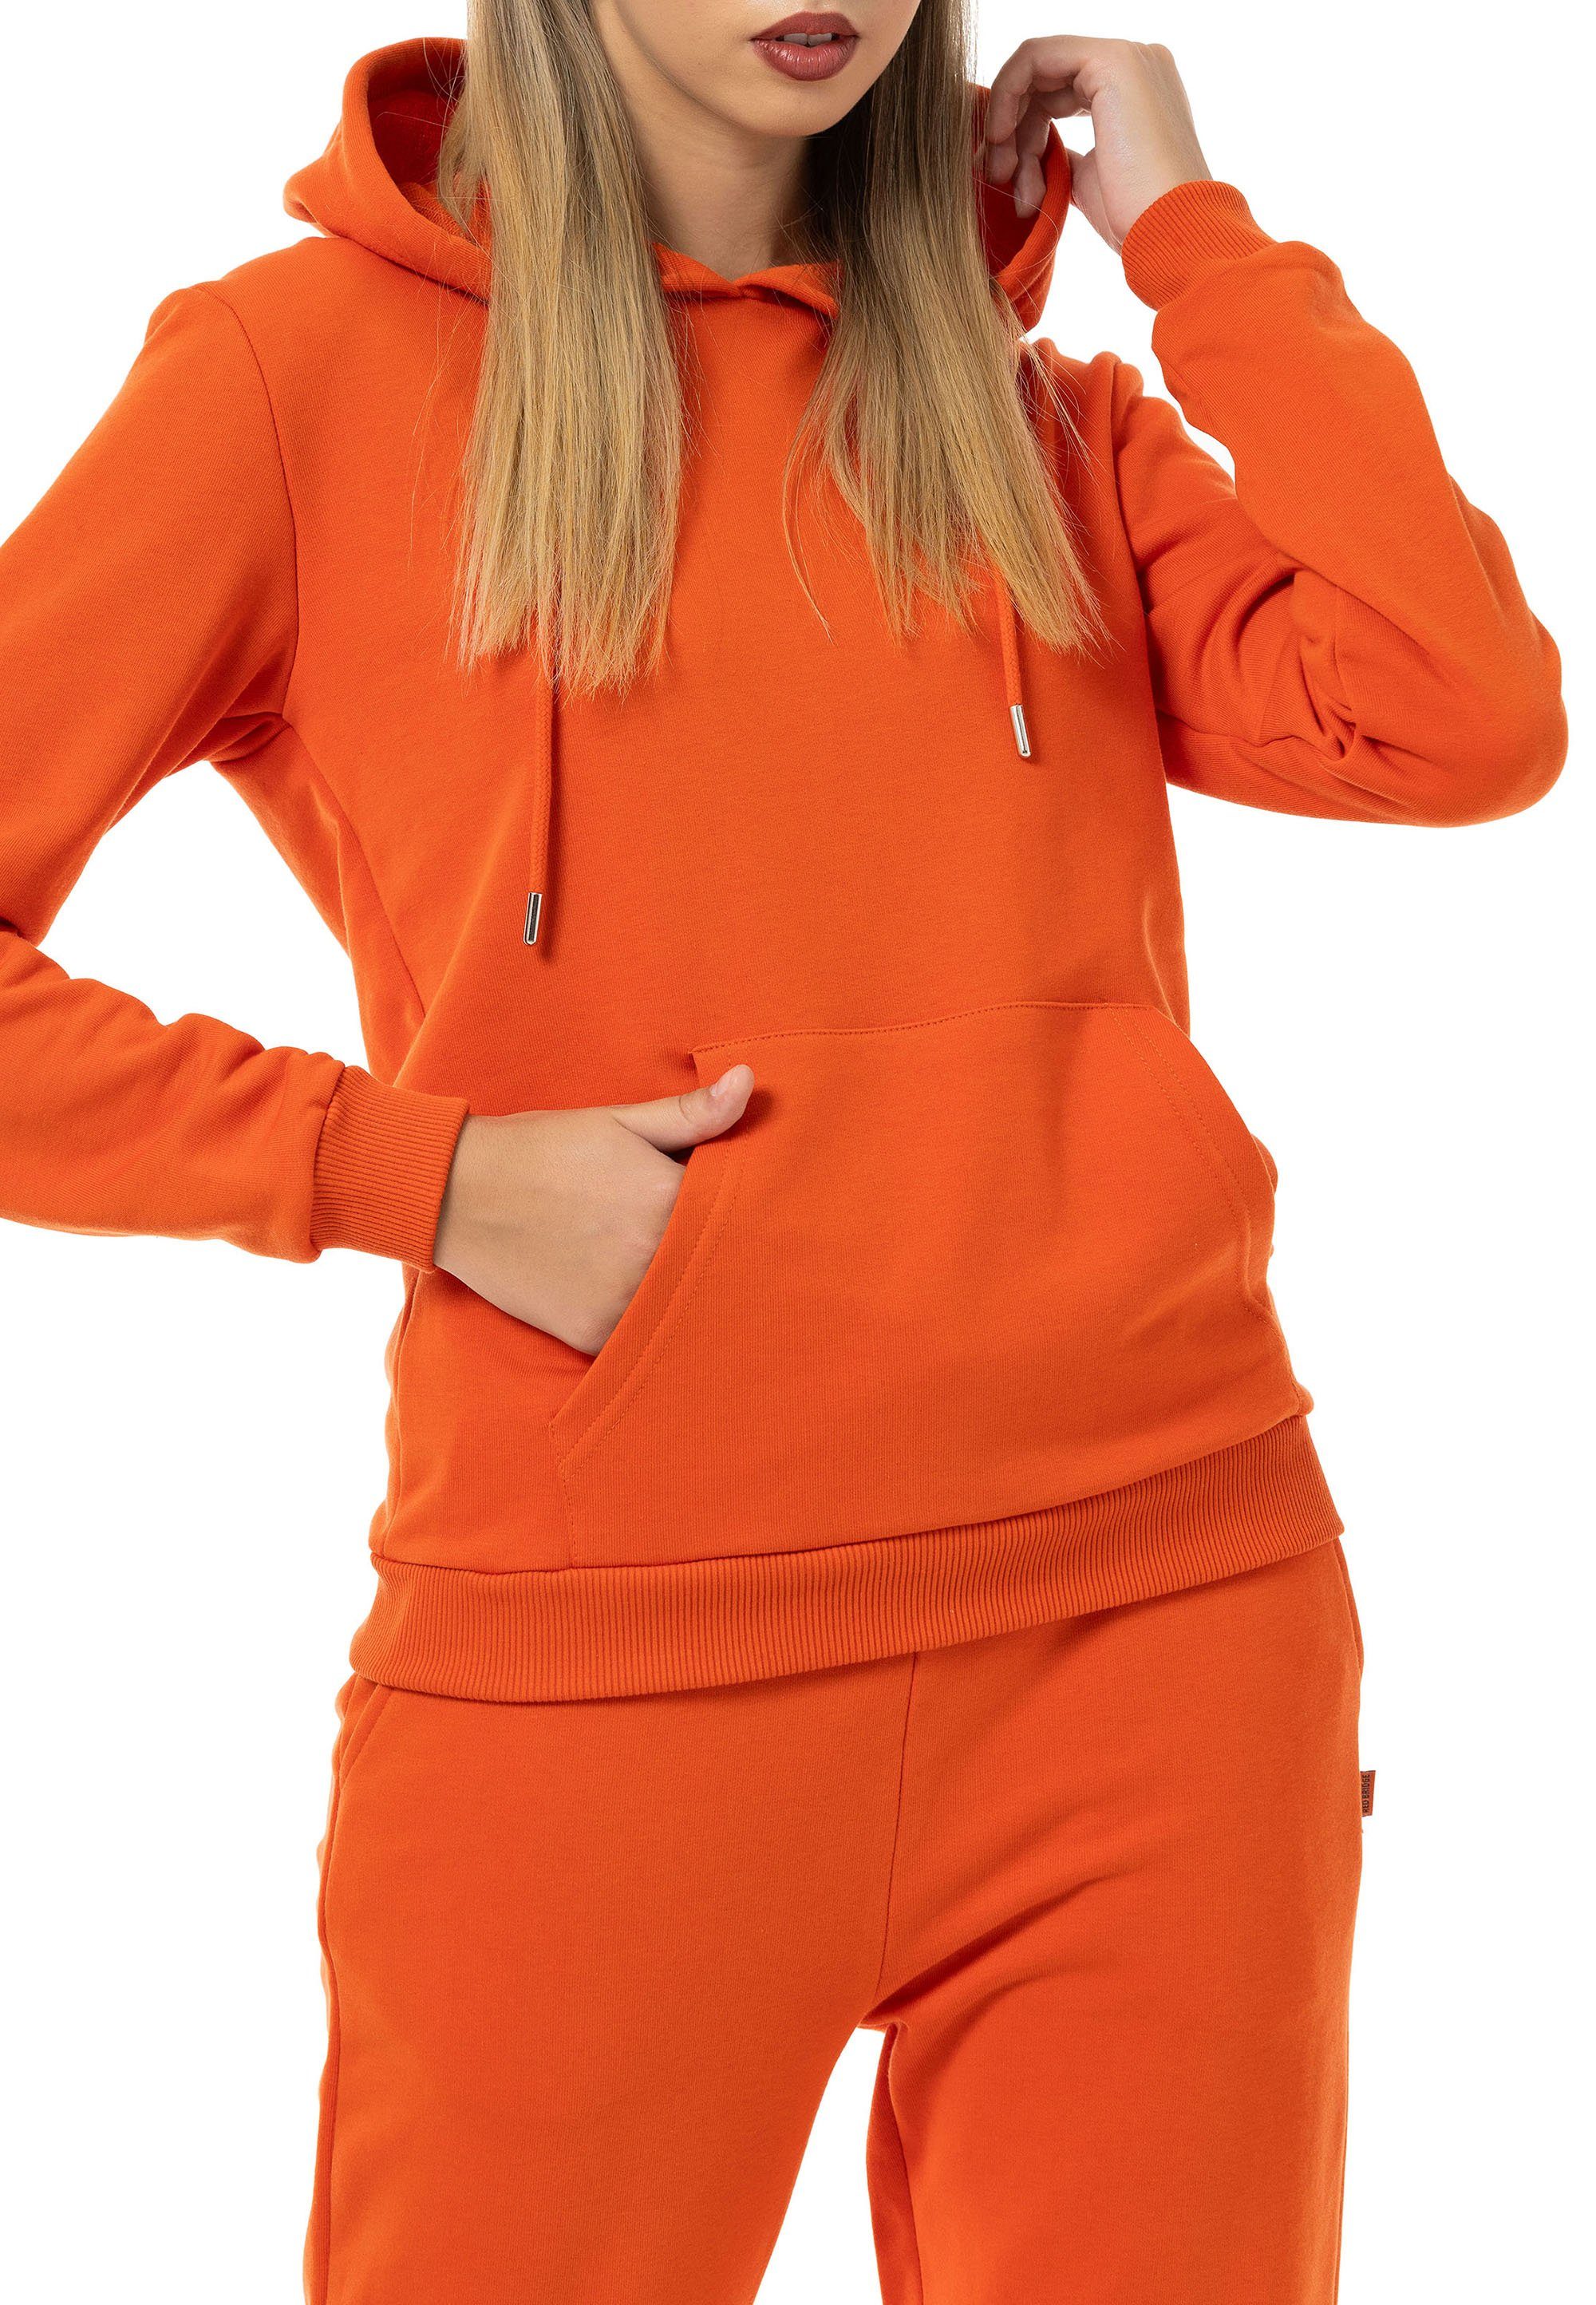 Hoodie Orange kaufen - willhaben